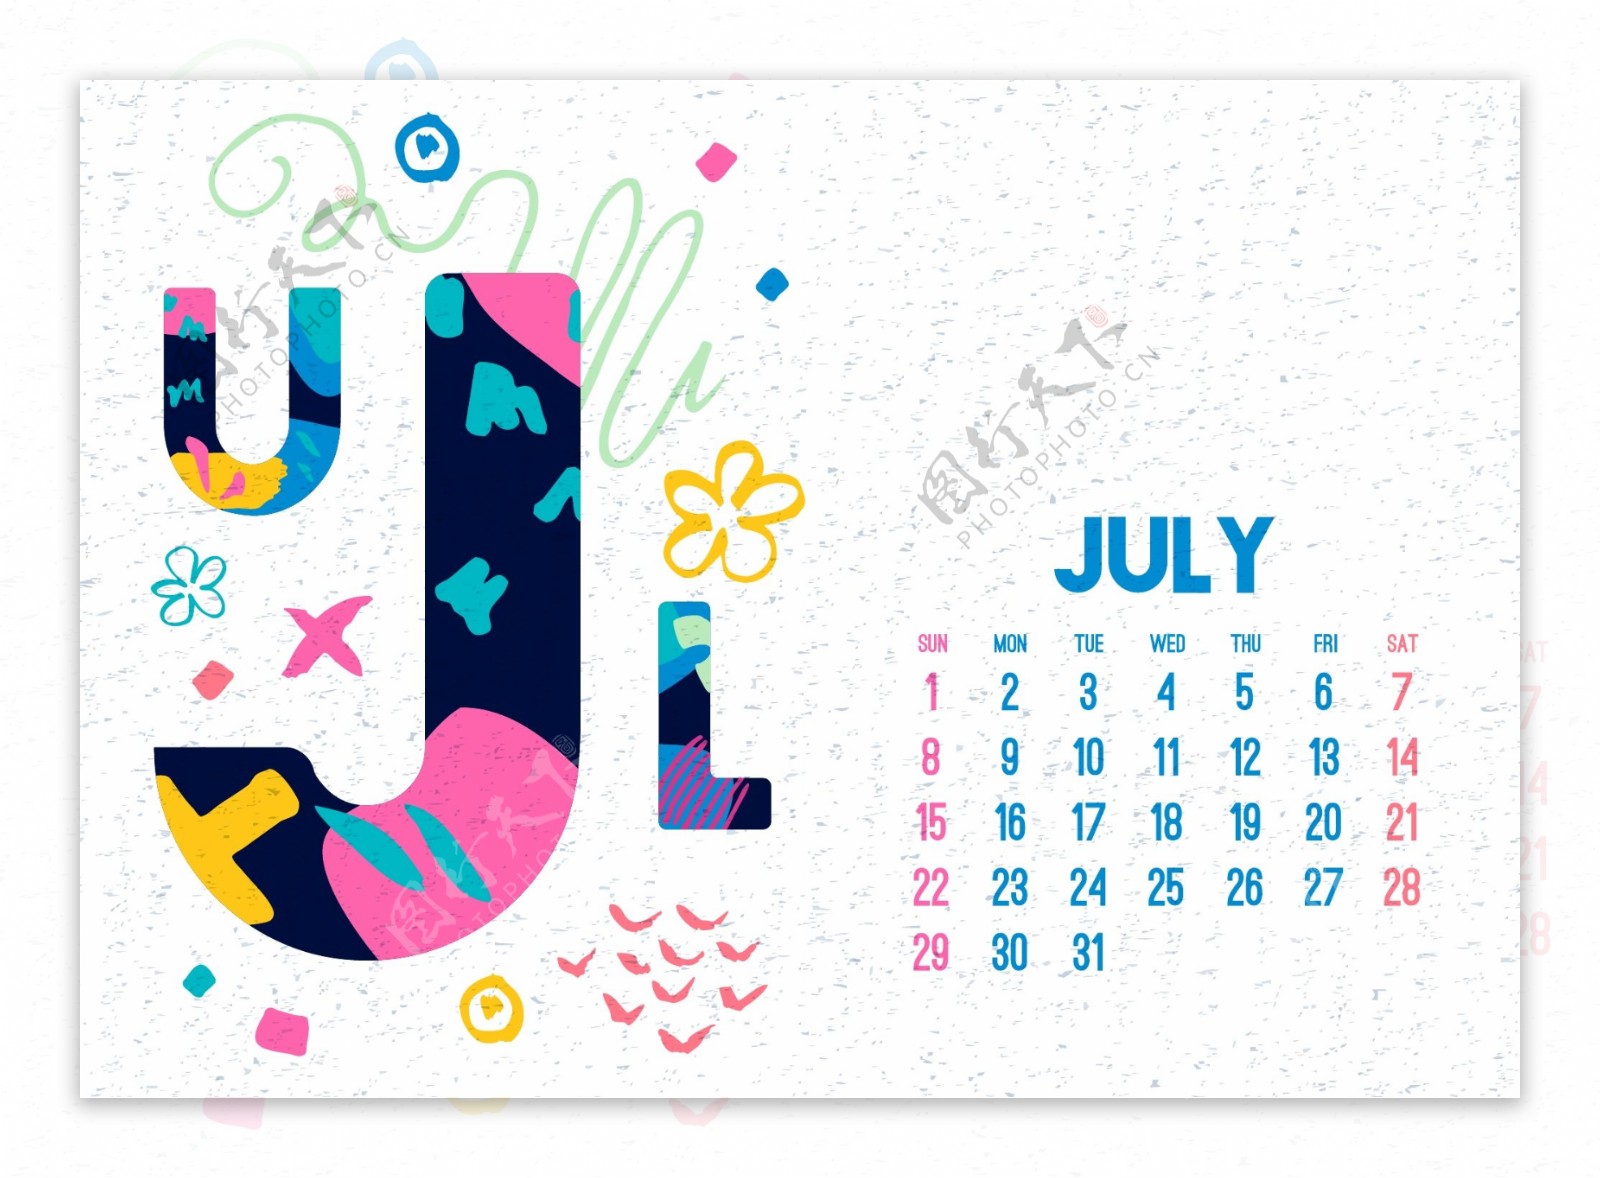 七月2018年日历设计矢量素材18年台历